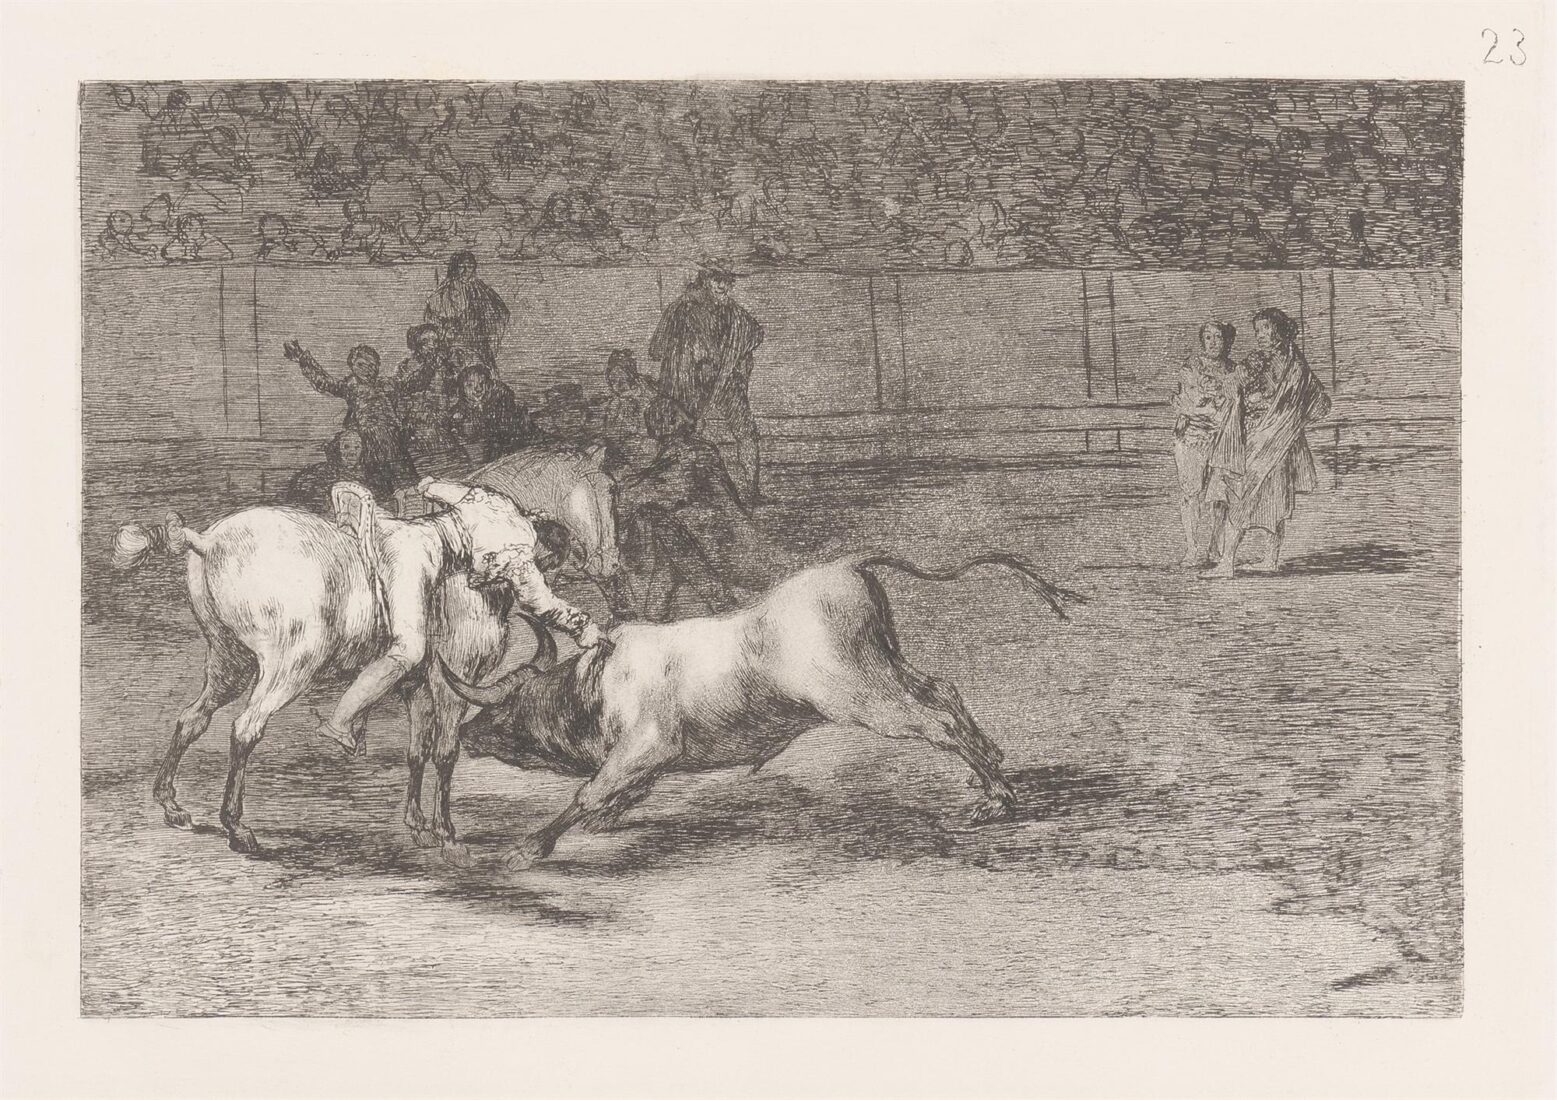 Ο Μαριάνο Θεμπάγιος, ή ο Ινδιάνος, σκοτώνει τον ταύρο πάνω από το άλογό του - Goya y Lucientes Francisco